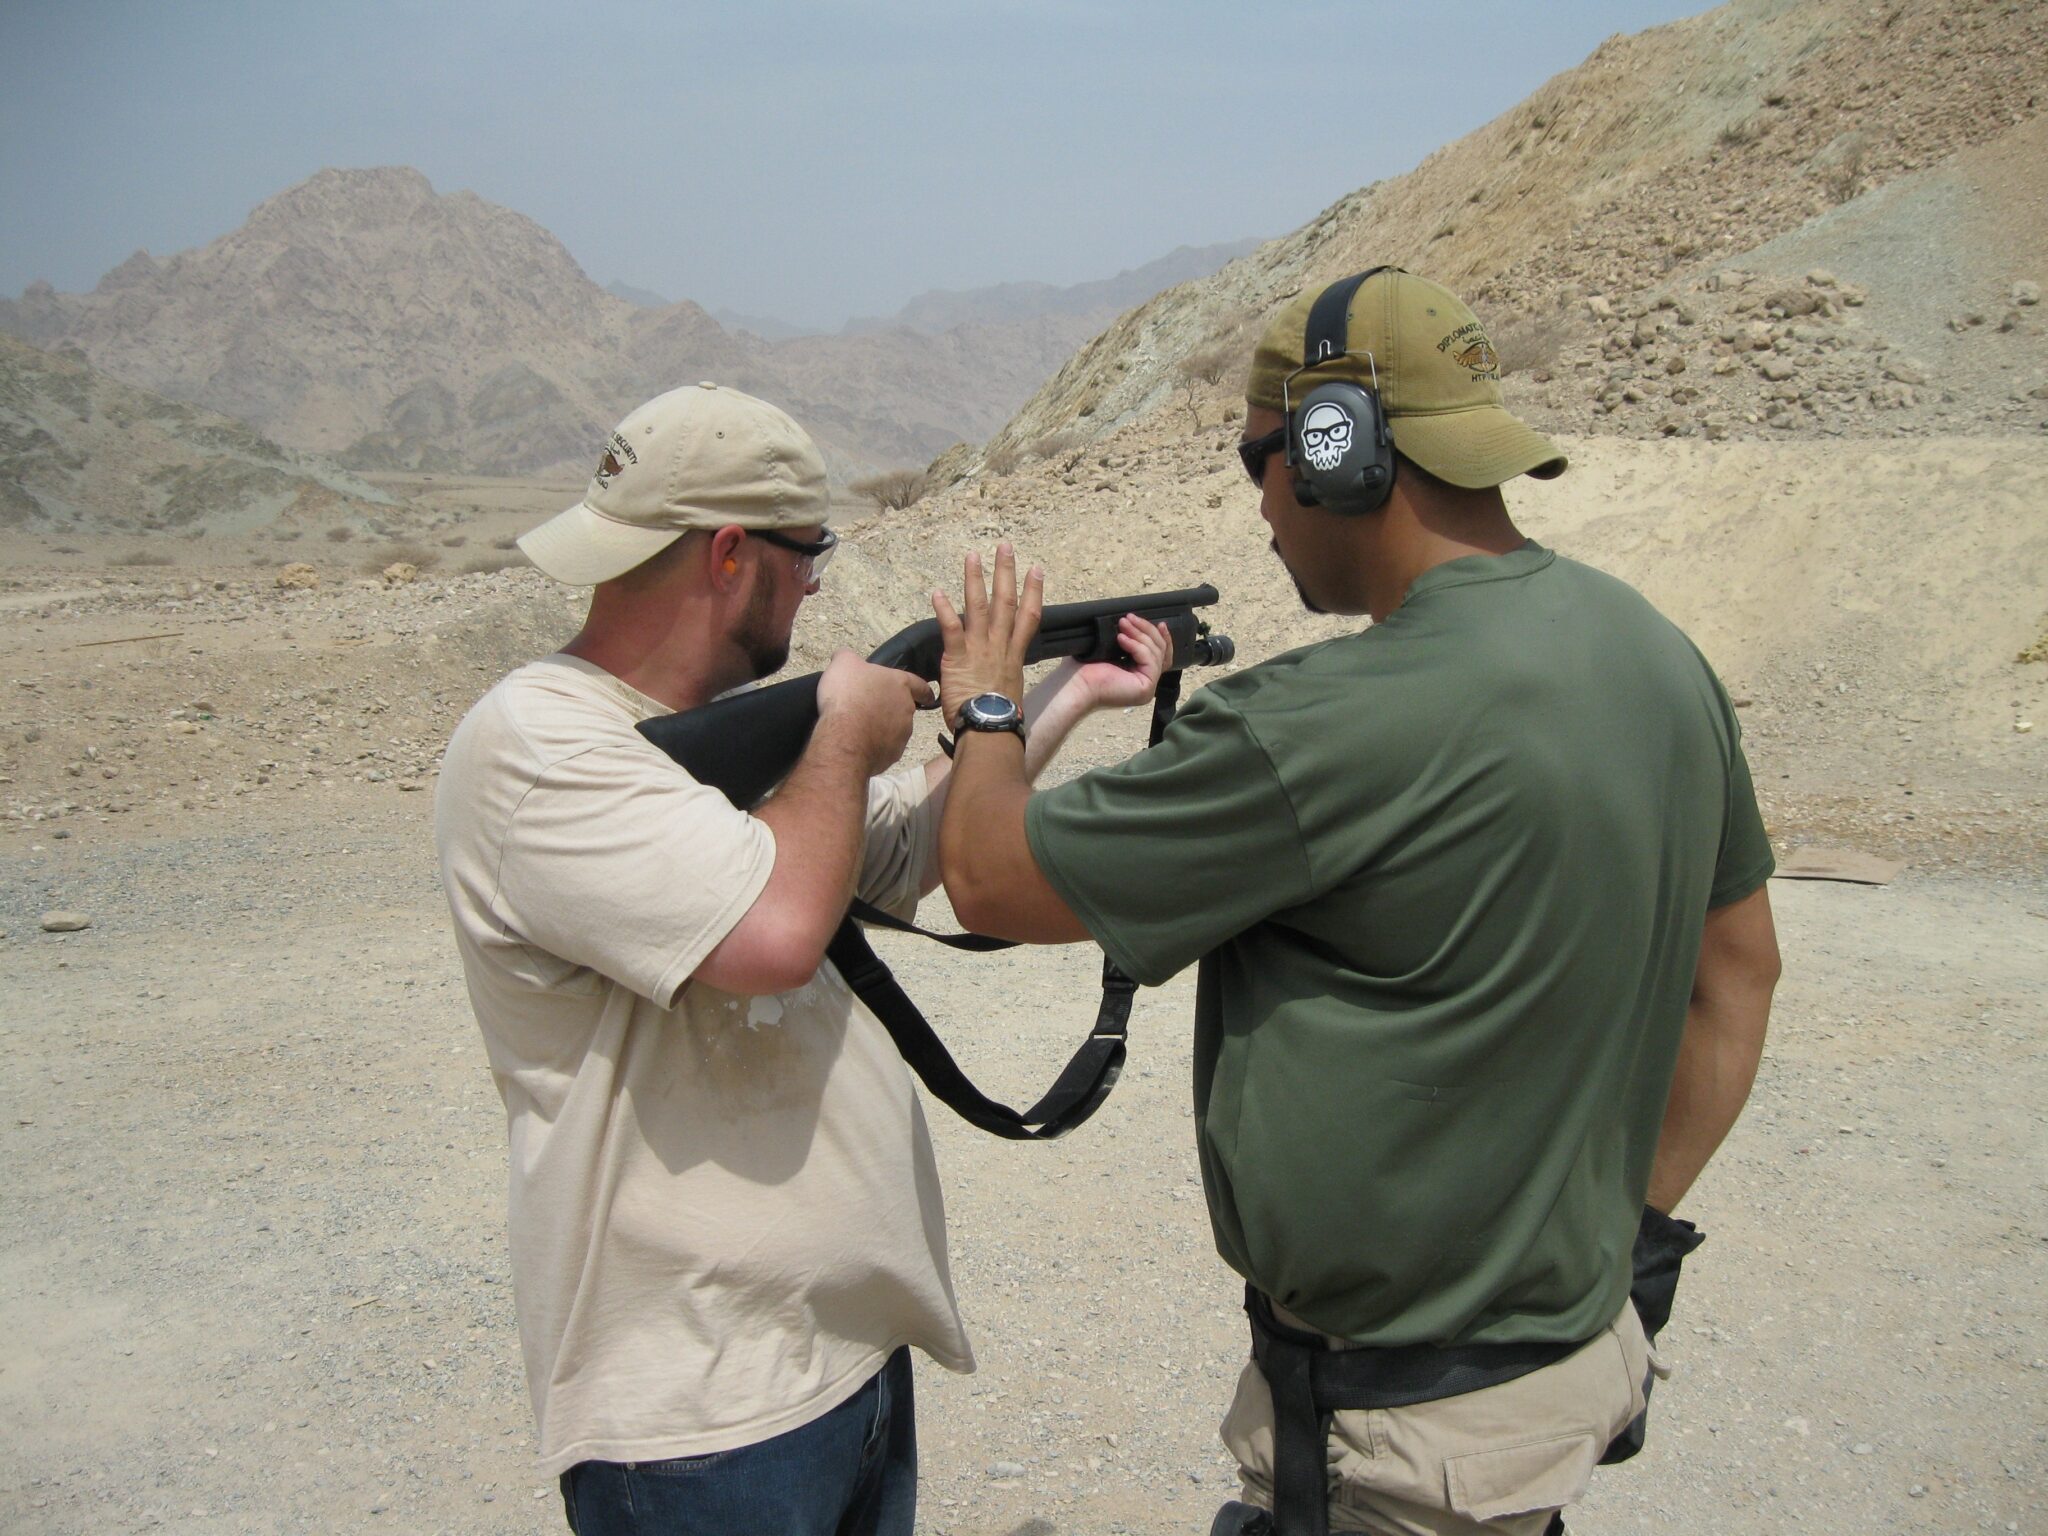 Dyrektor kreatywny Cory Davis wziął udział w szkoleniu z broni palnej w pobliżu Dubaju.